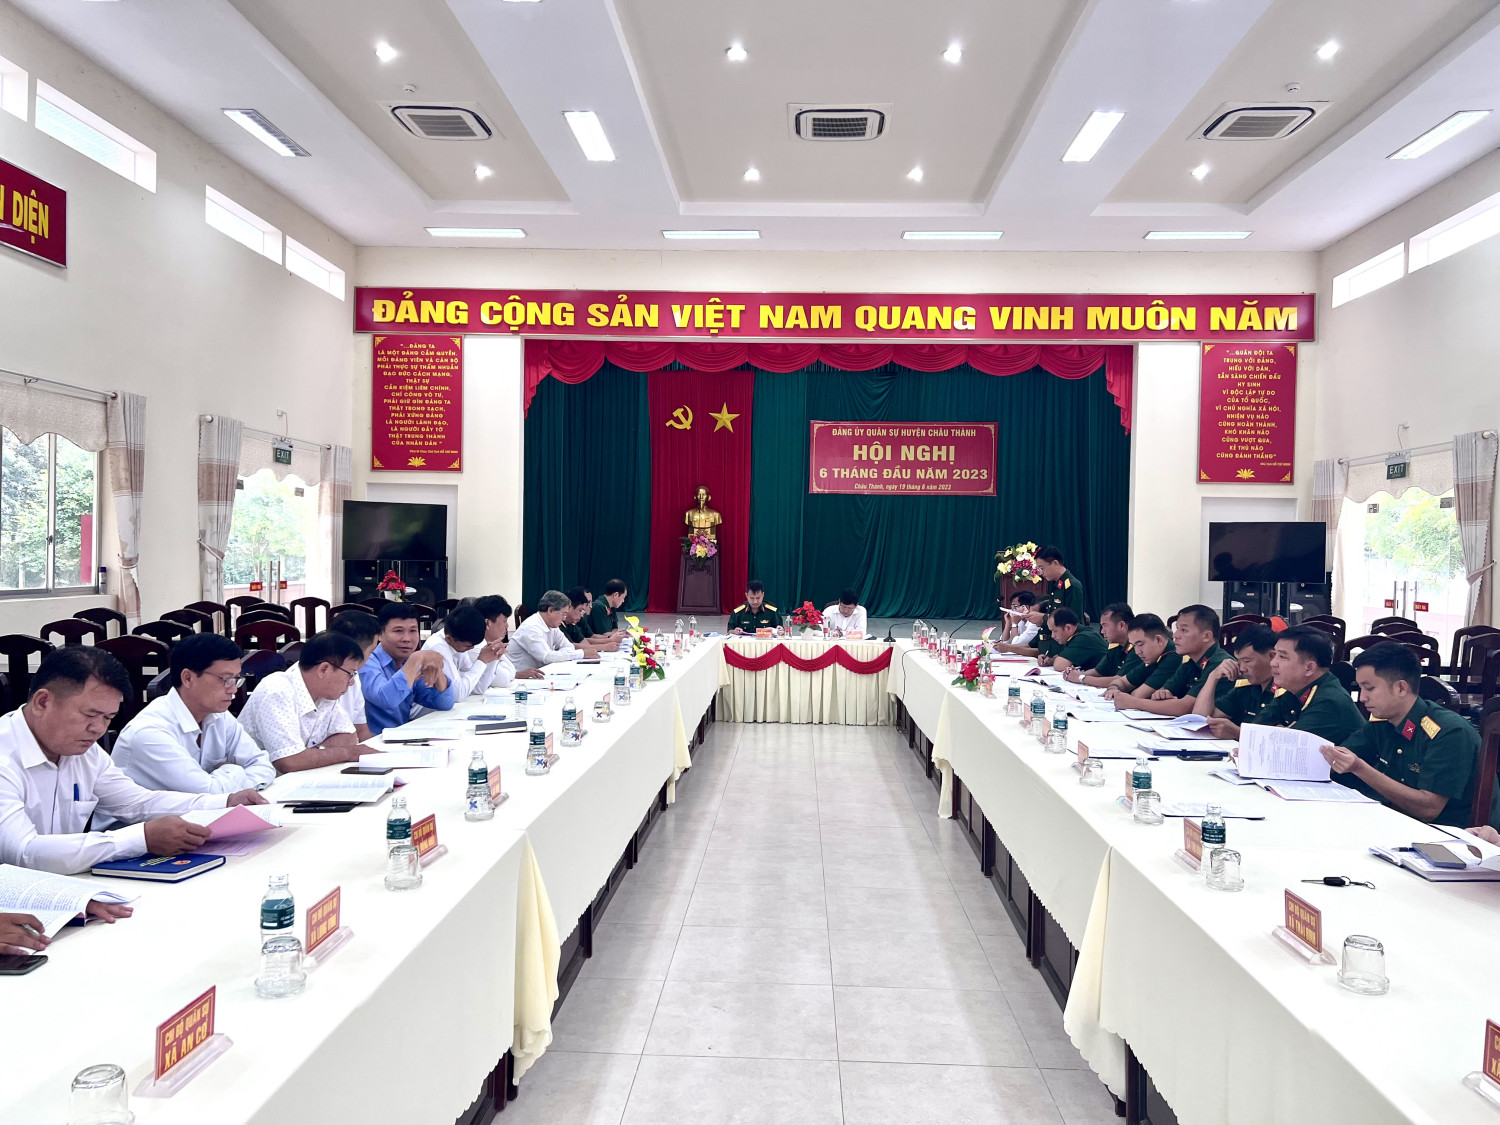 Đảng bộ Quân sự Huyện Châu Thành: Hội nghị 6 tháng đầu năm 2023